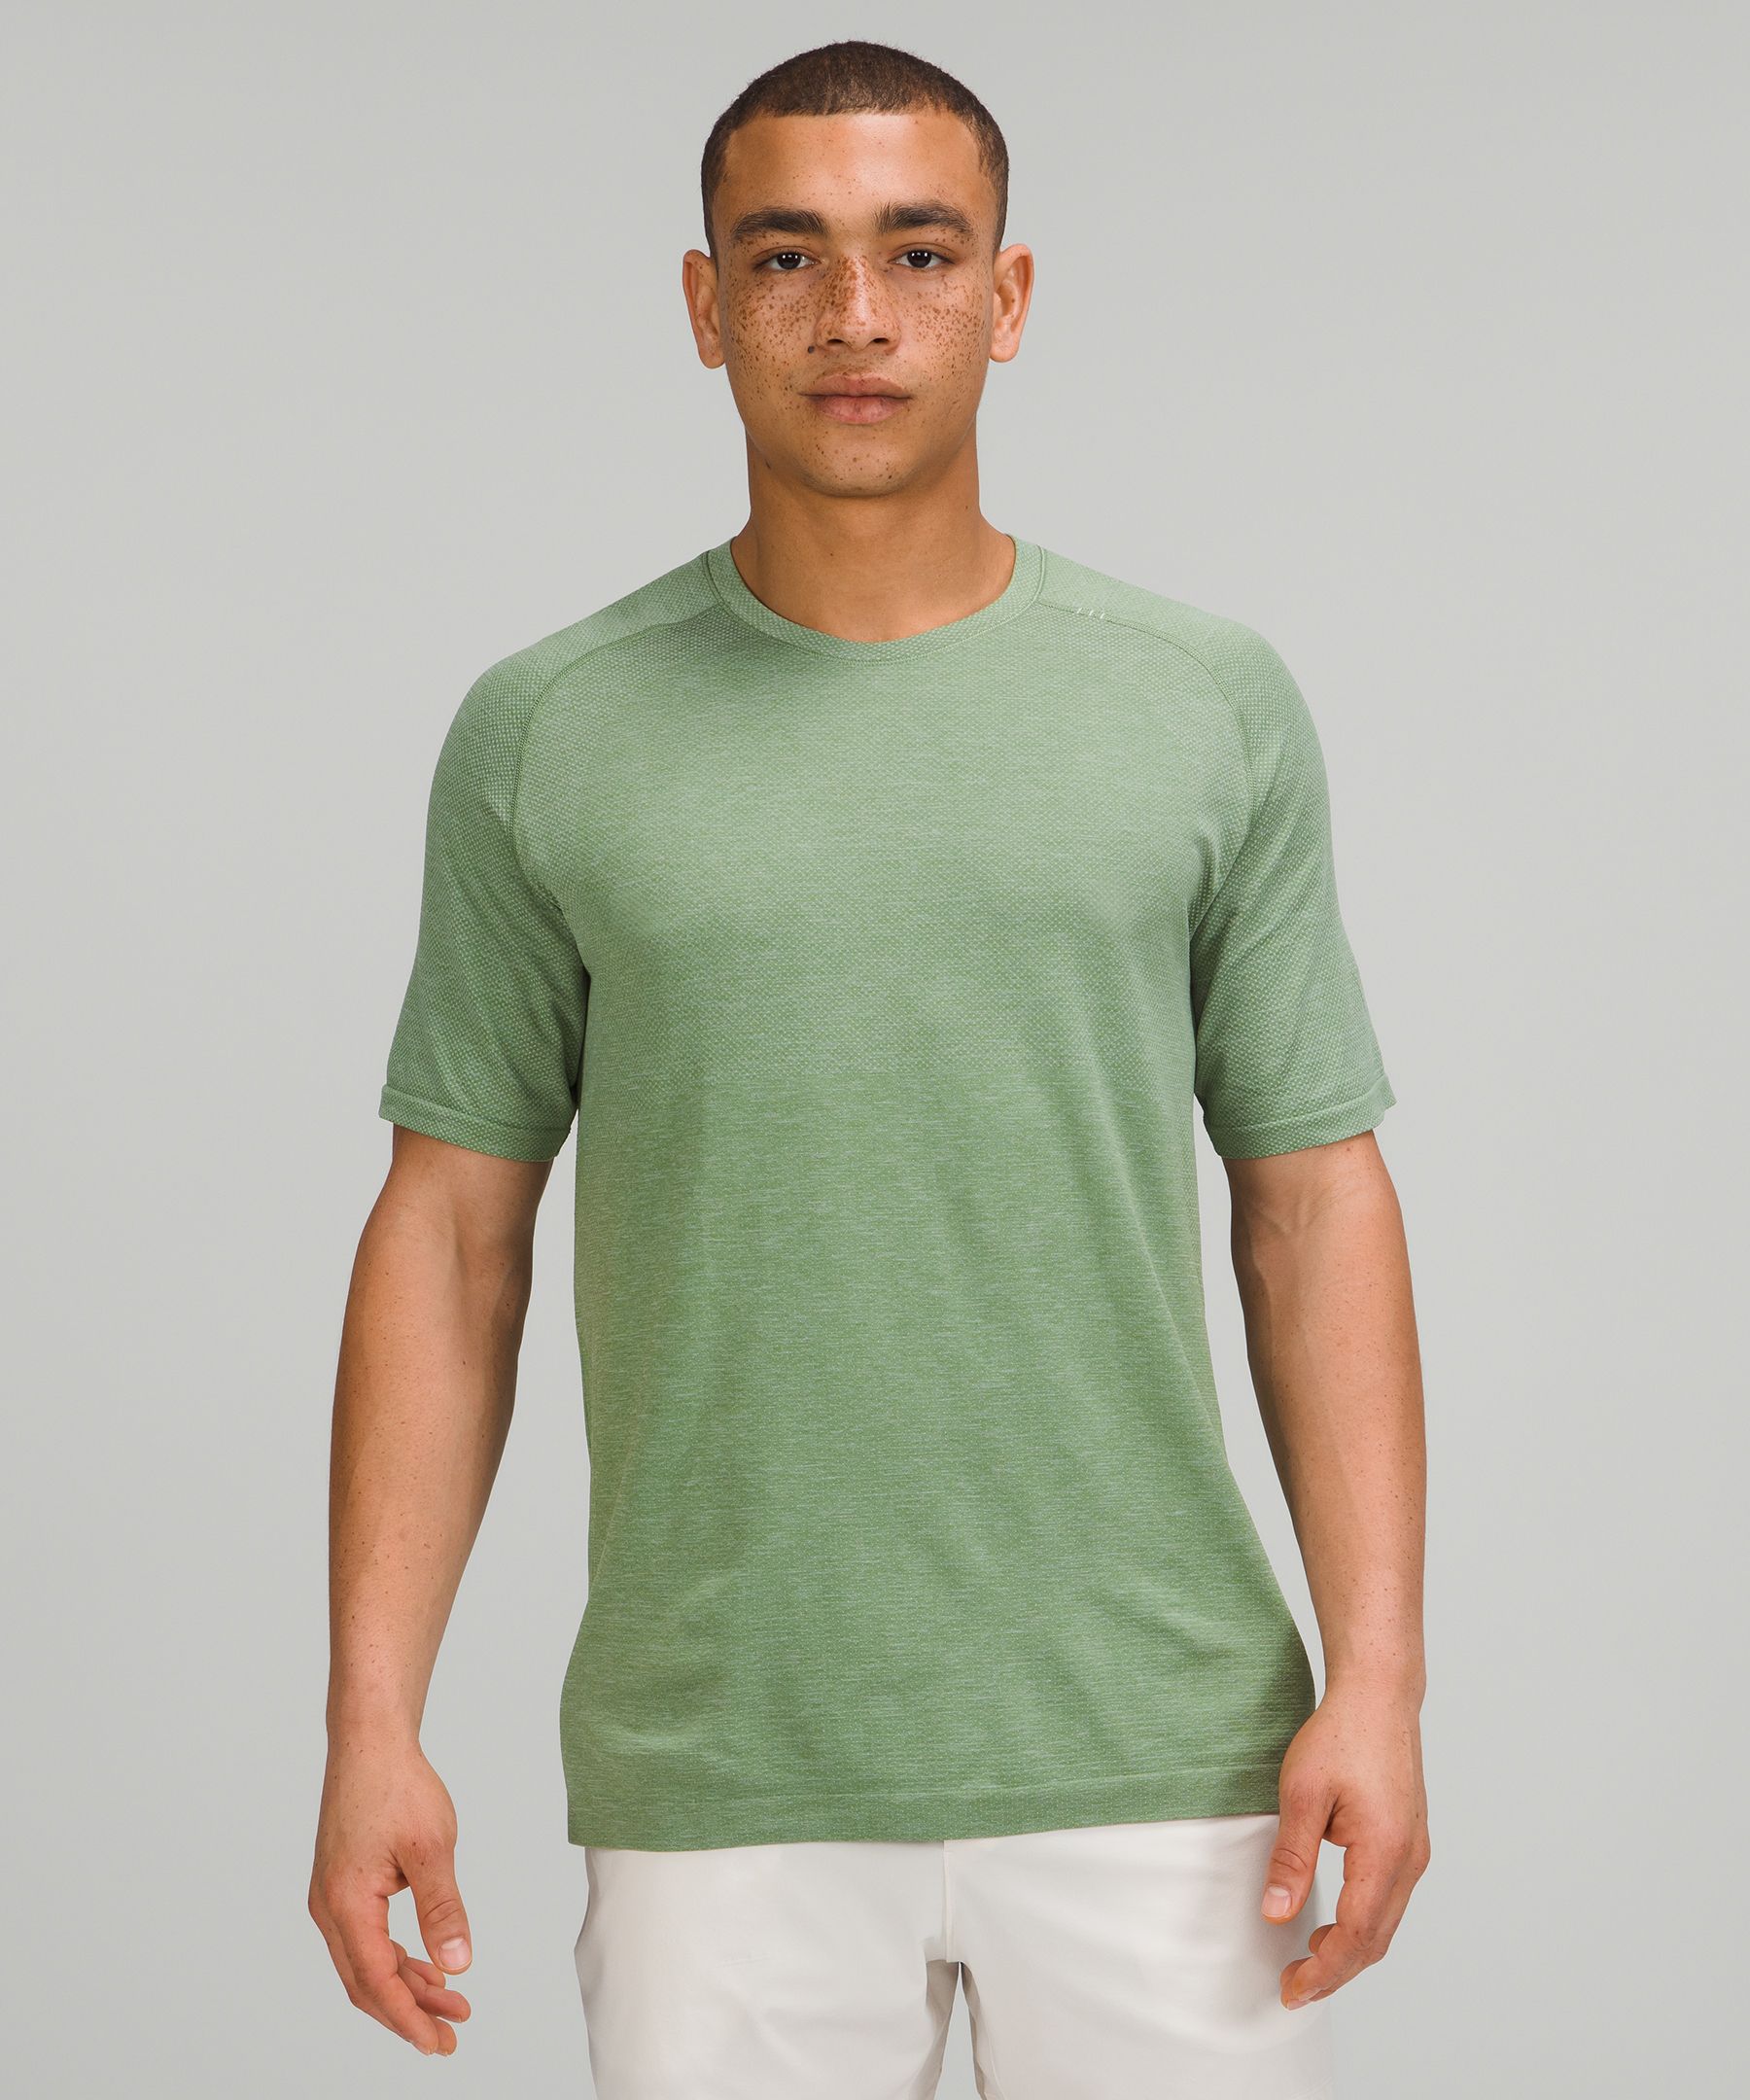 Lululemon Metal Vent Tech Short Sleeve Shirt 2.0 In Silver Blue/cedar Green